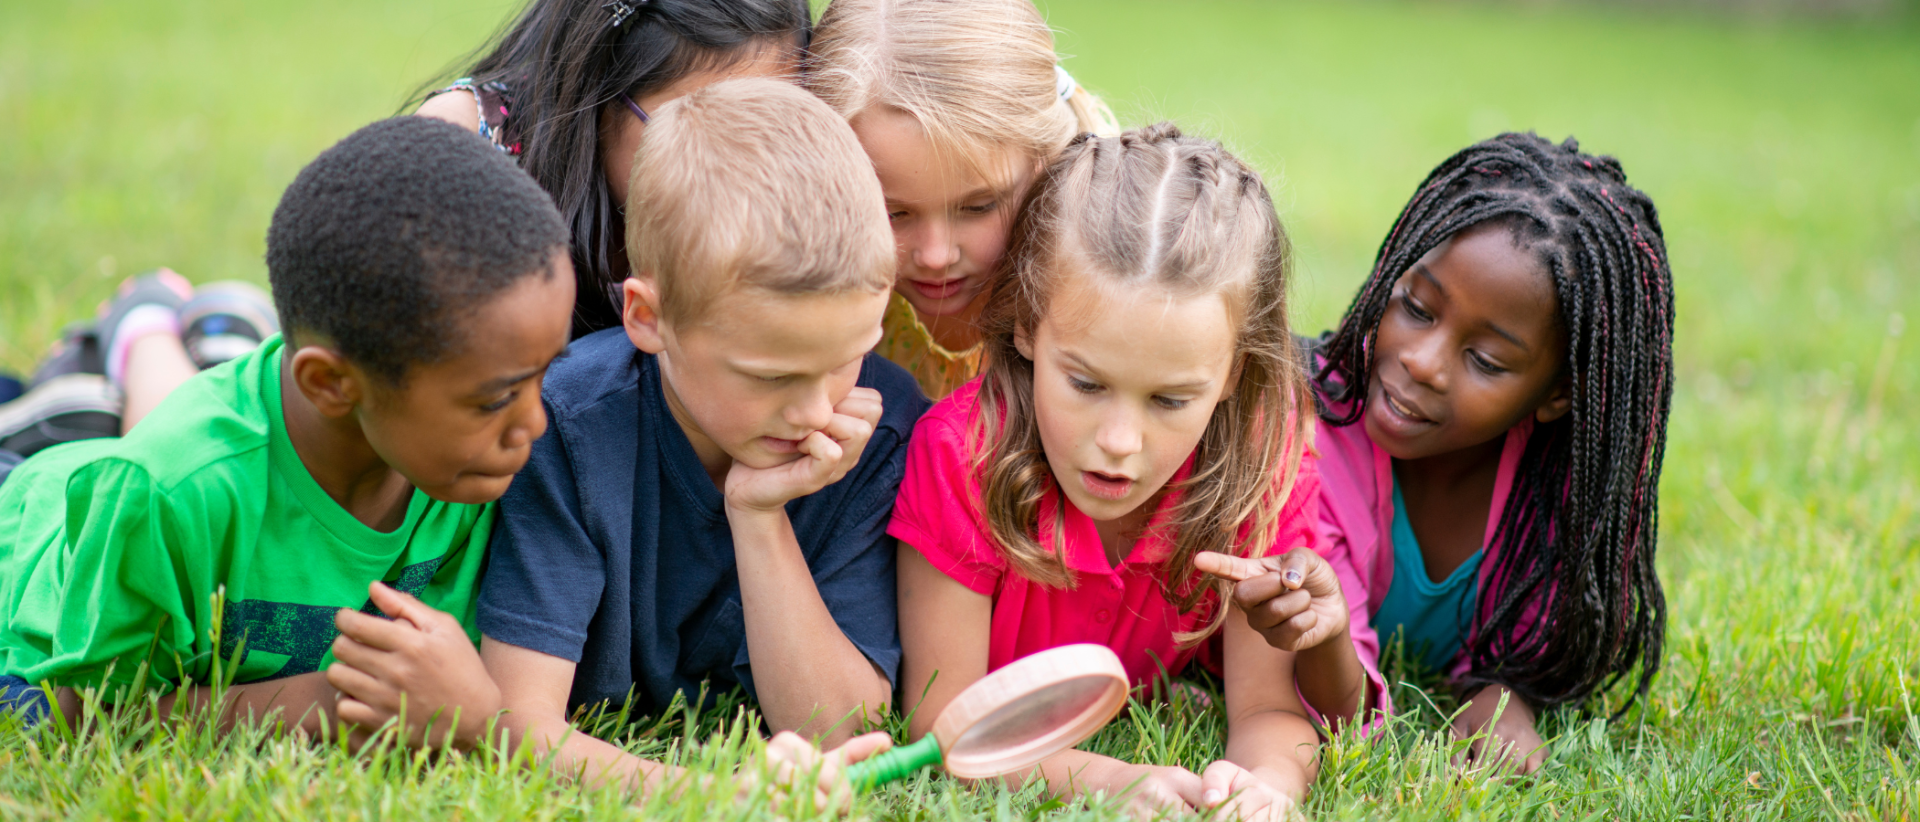 Lapsia vatsallaan nurmikolla katsomassa suurennuslasilla jotain